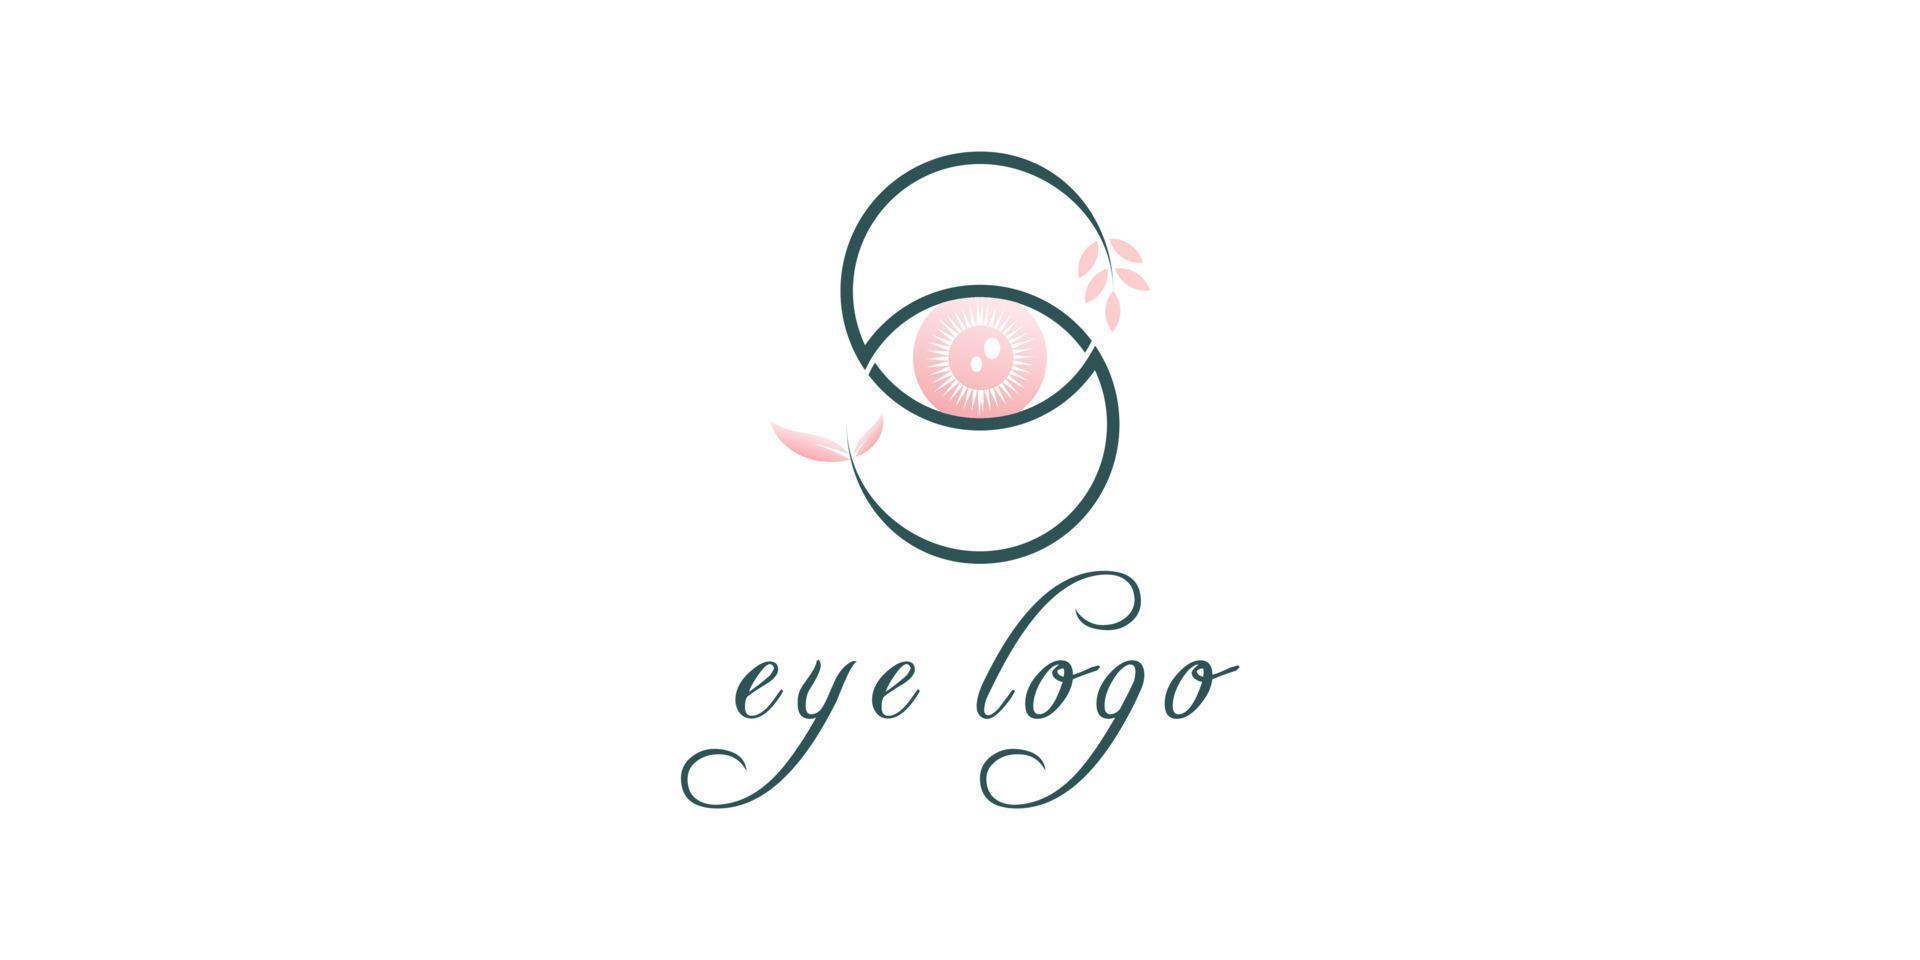 Eye logo with leaf concept design illustration vector